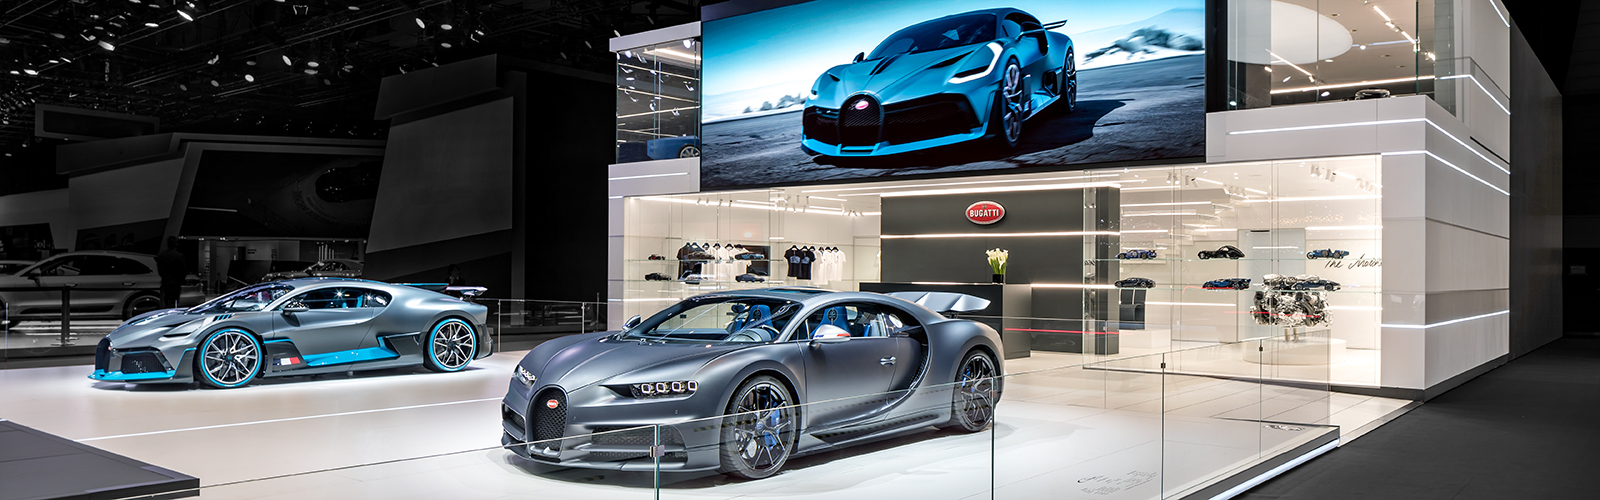 Braunwagner Spatial und Interior Design Bugatti Geneva International Motor Show 2019